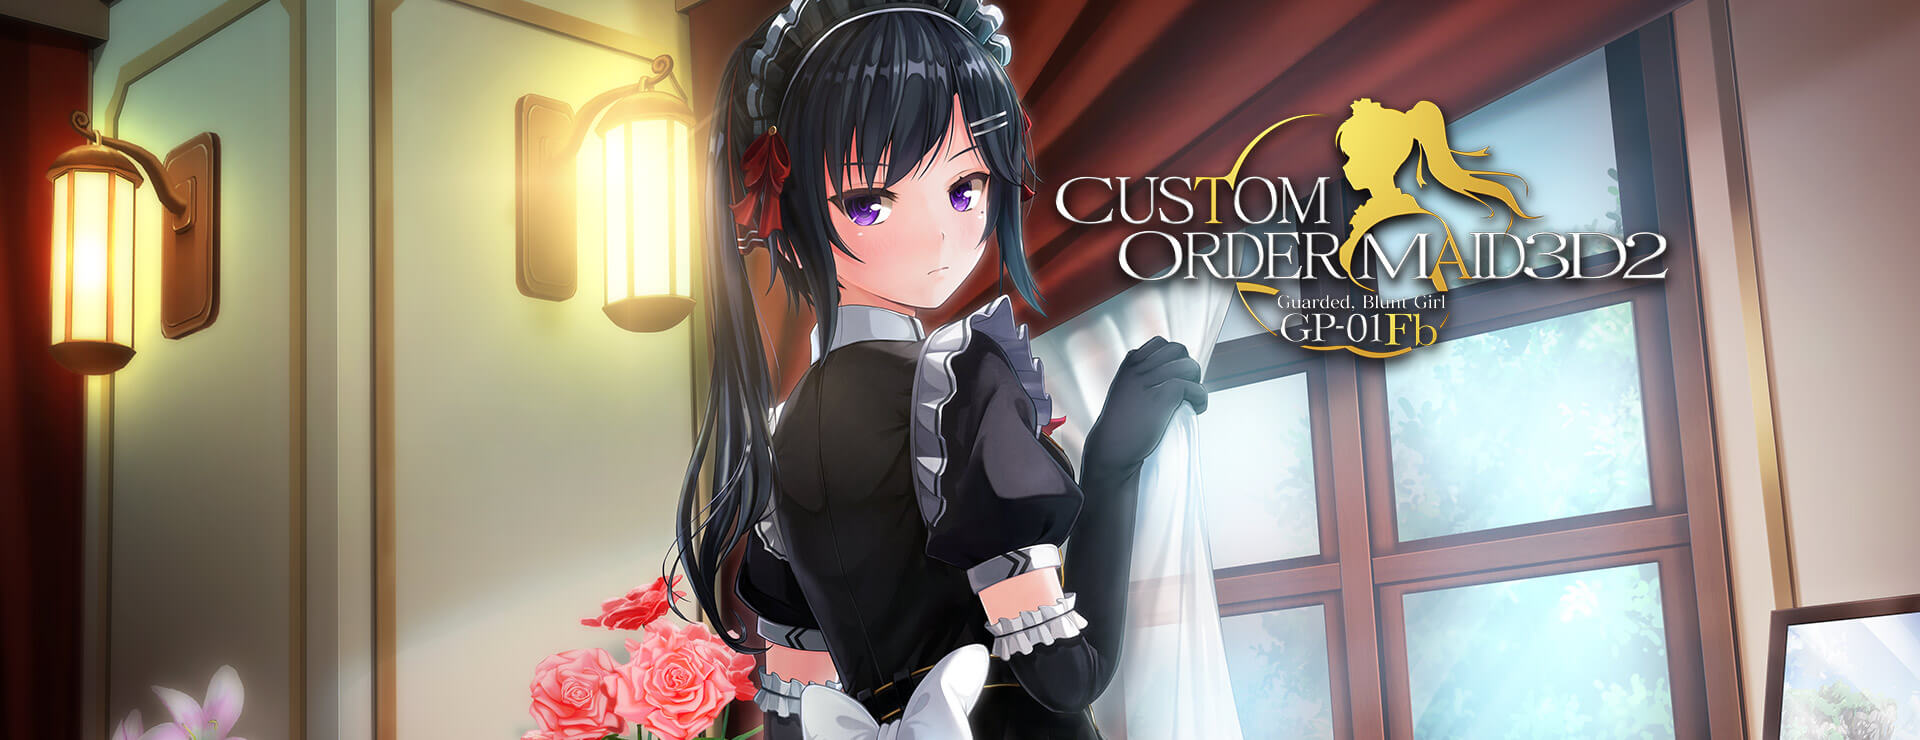 Custom Order Maid 3D2 Guarded, Blunt Girl GP-01fb DLC - Simulación Juego